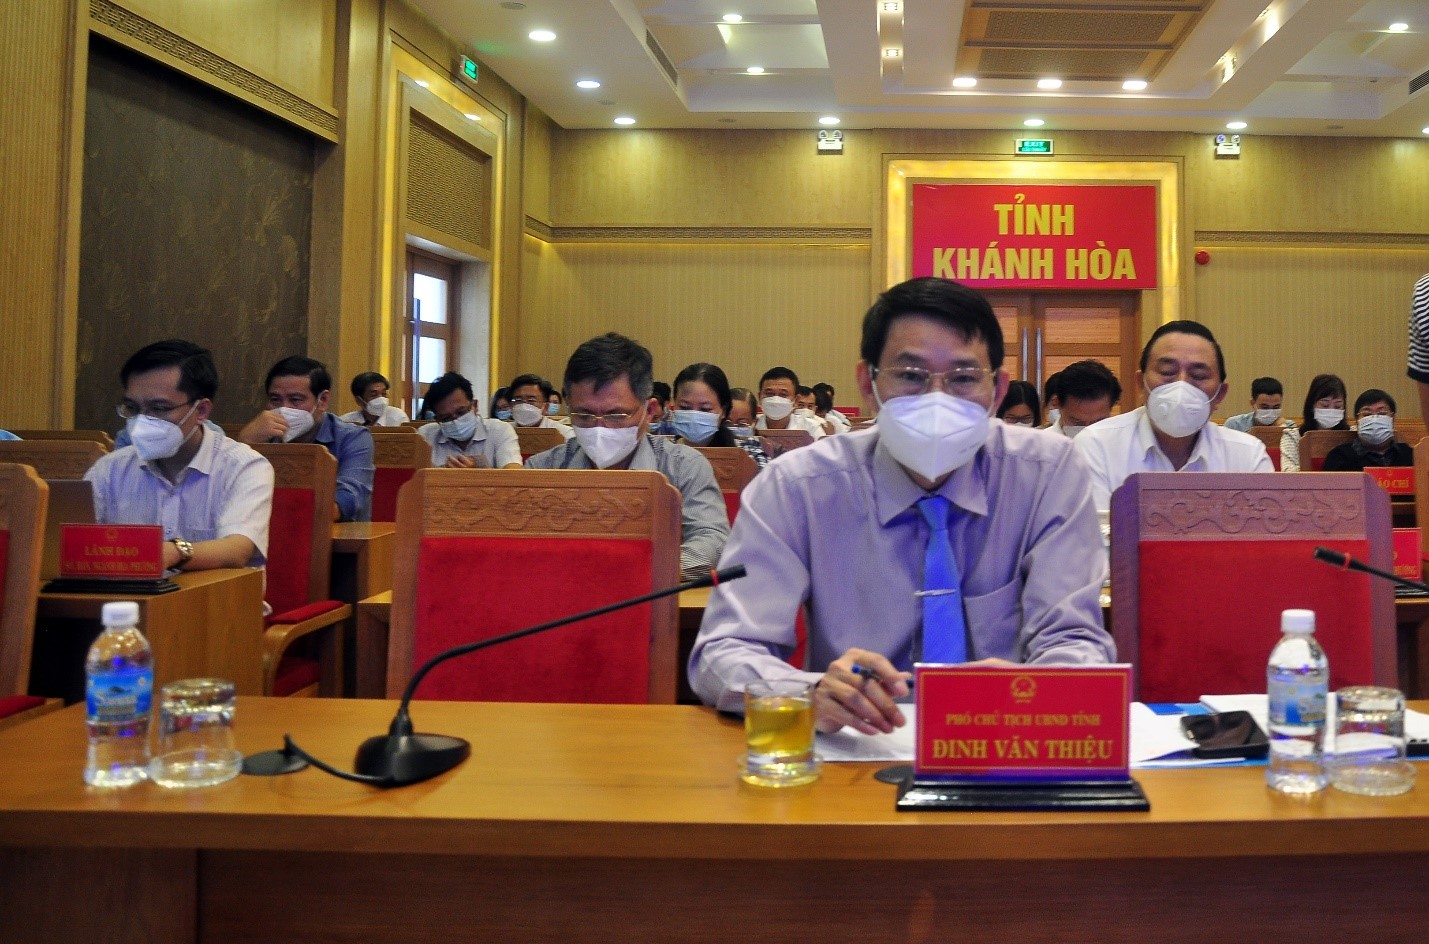 Toàn cảnh họp báo về tình hình kinh tế - xã hội tỉnh Khánh Hòa năm 2021